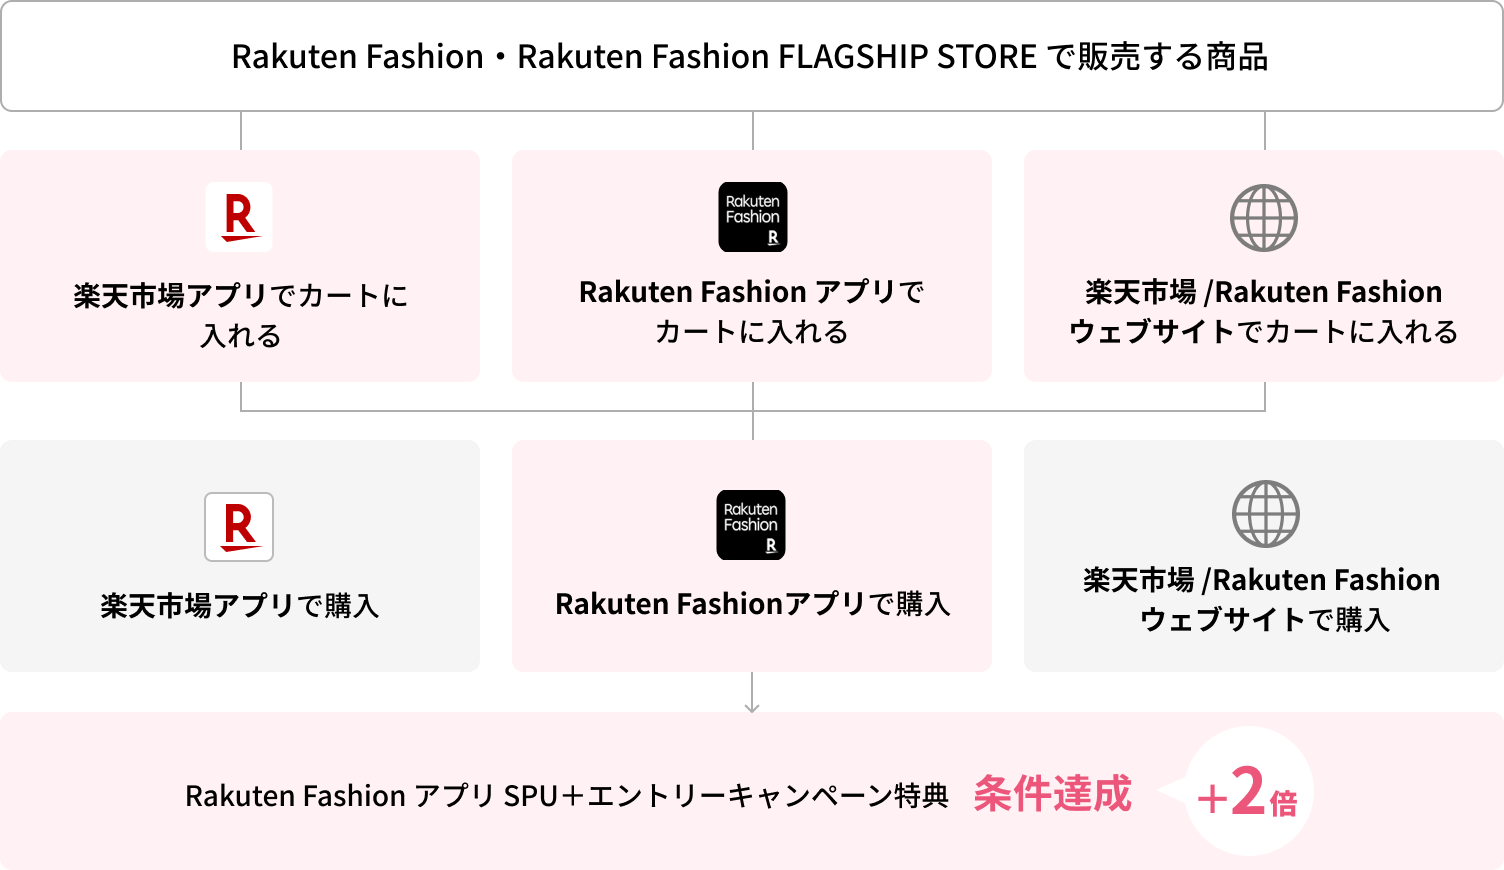 Rakuten Fashion アプリで購入